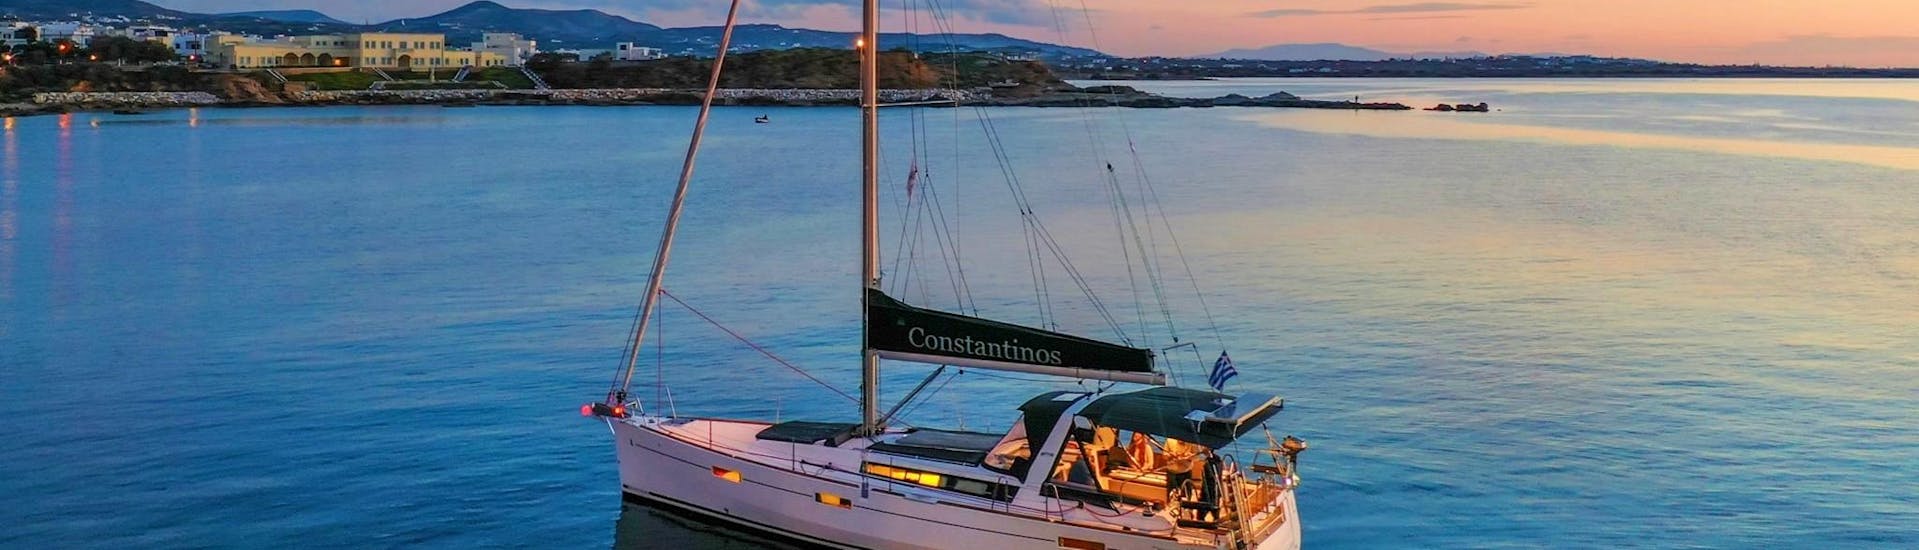 Croisière dans un voilier, au coucher du soleil, à Naxos.